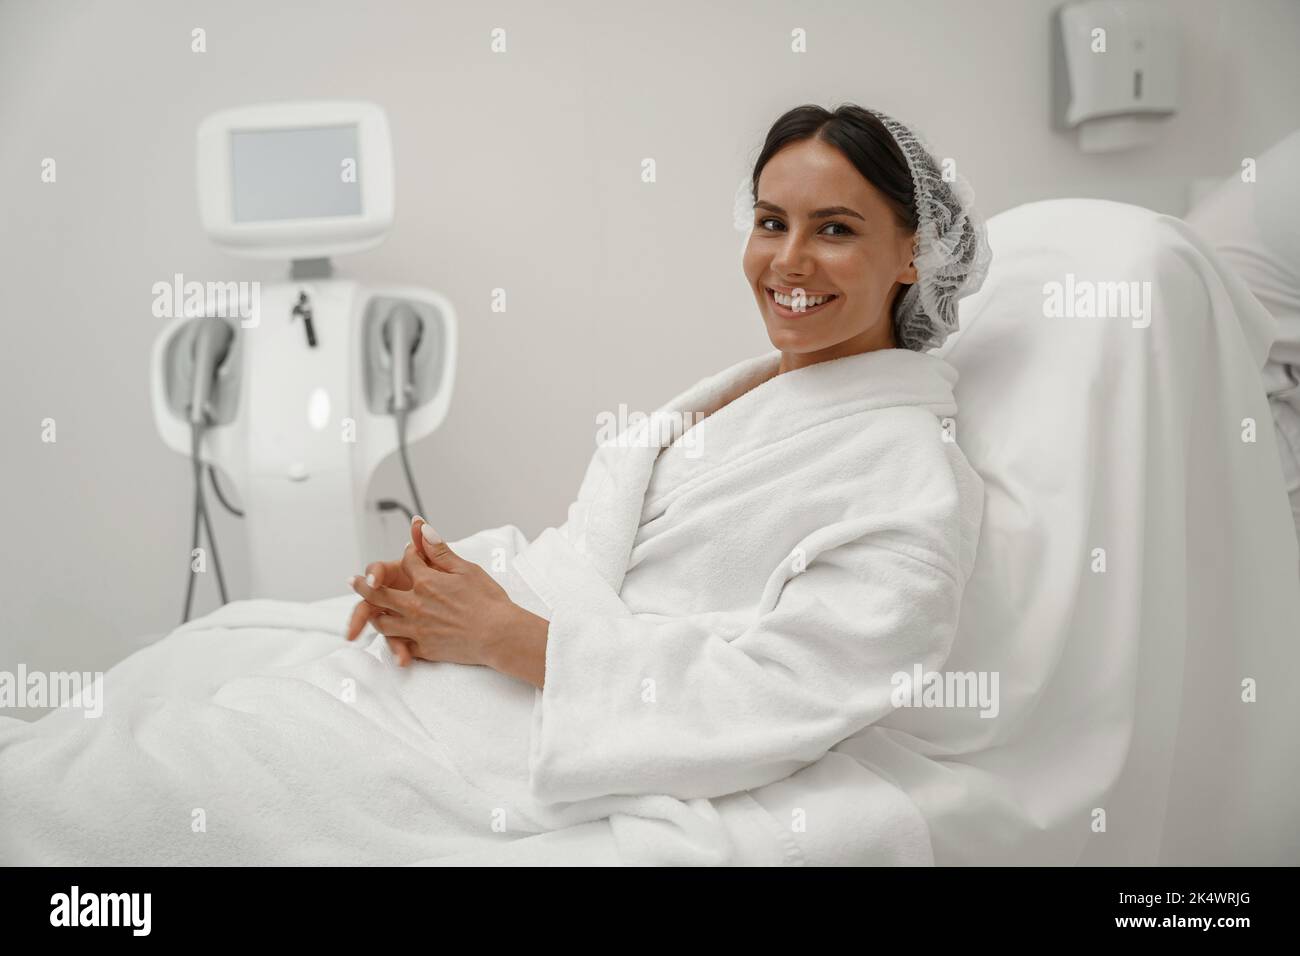 Belle femme en peignoir blanc pendant la procédure médicale dans la clinique de beauté Banque D'Images